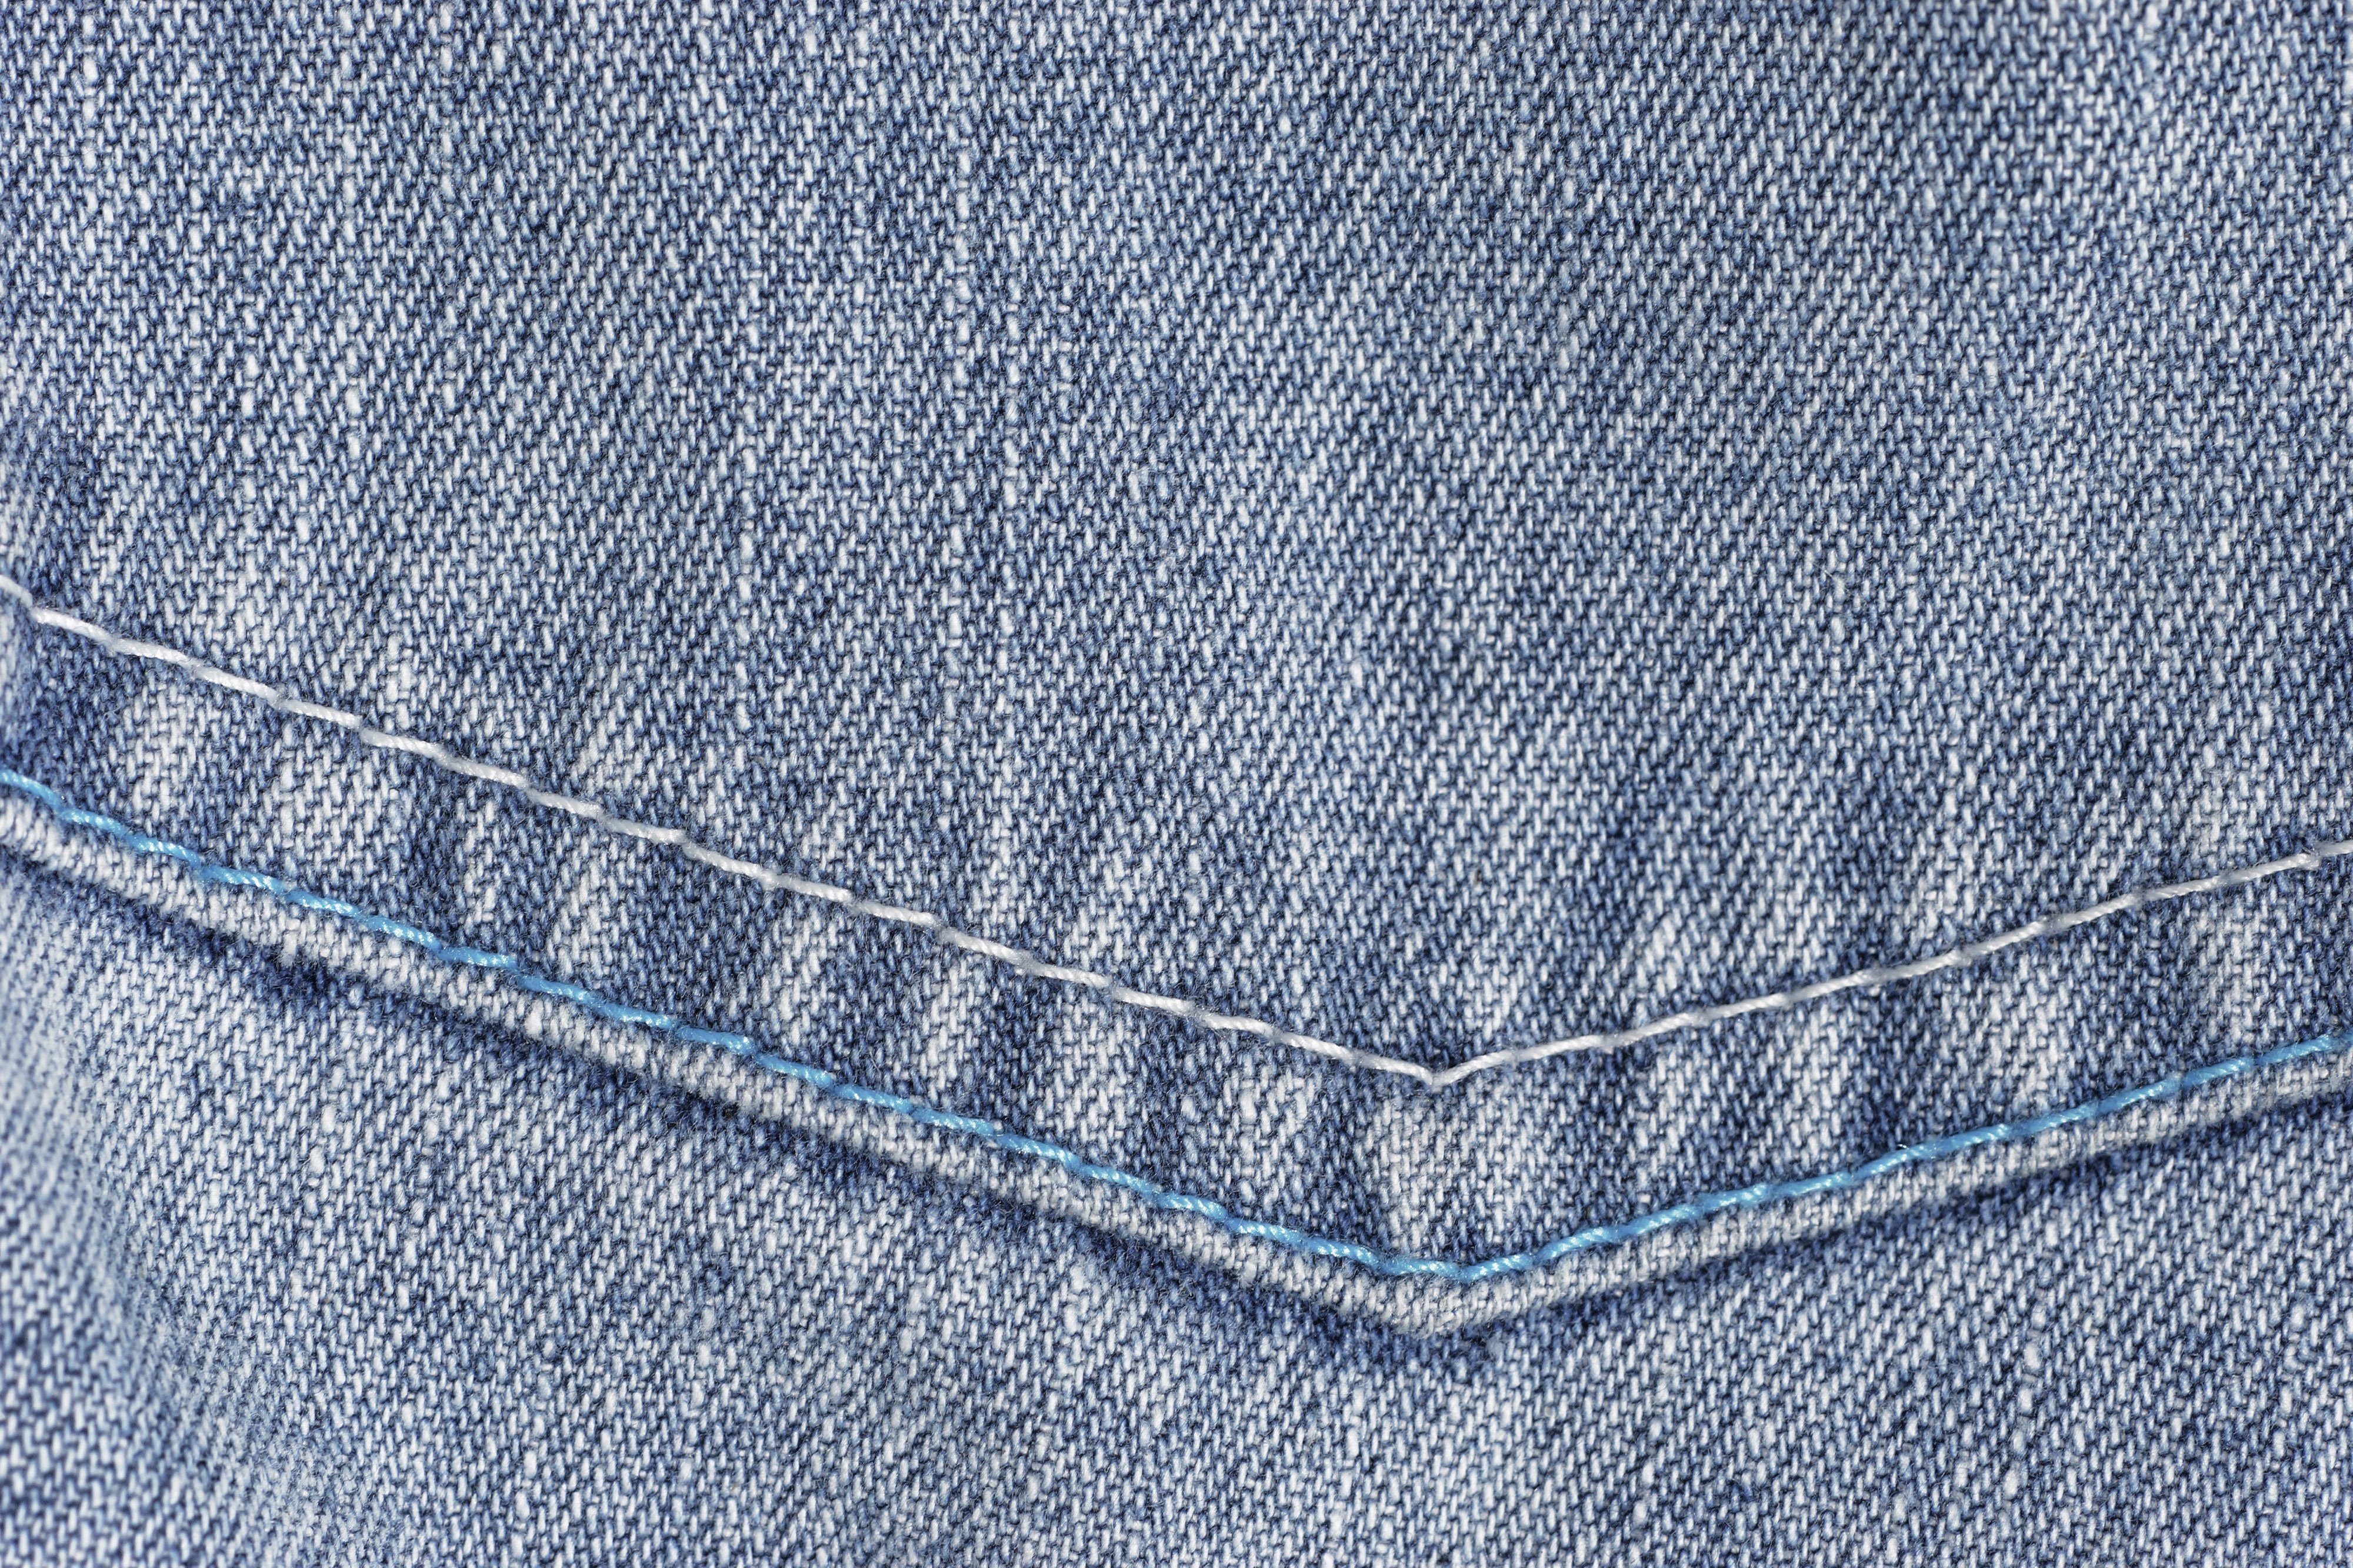 Джинсовый принт. Джинсовая ткань. Материал джинс. Фактура джинсы. Текстура джинсовой ткани.